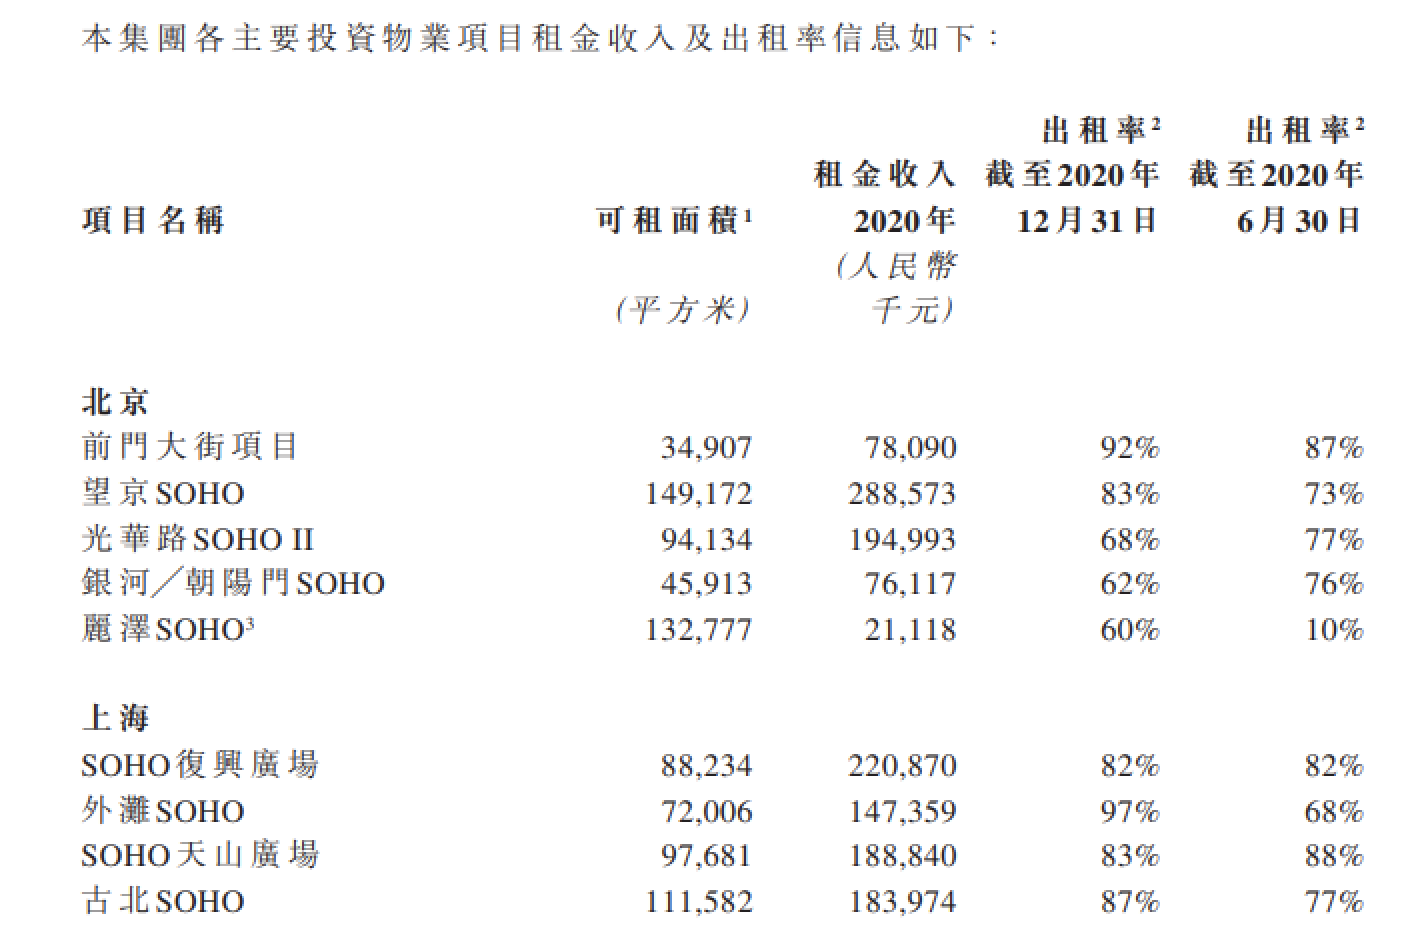 SOHO中国：2020年实现营业收入约人民币21.92亿元，同比增长约19%